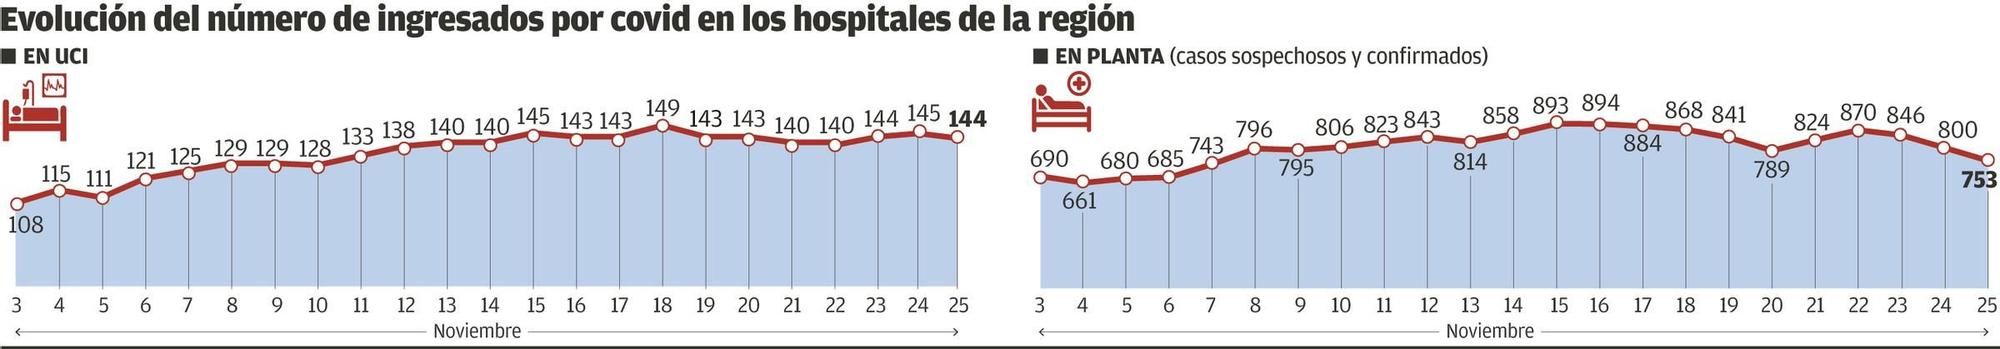 Evolución del número de ingresados por covid en hospitales asturianos.